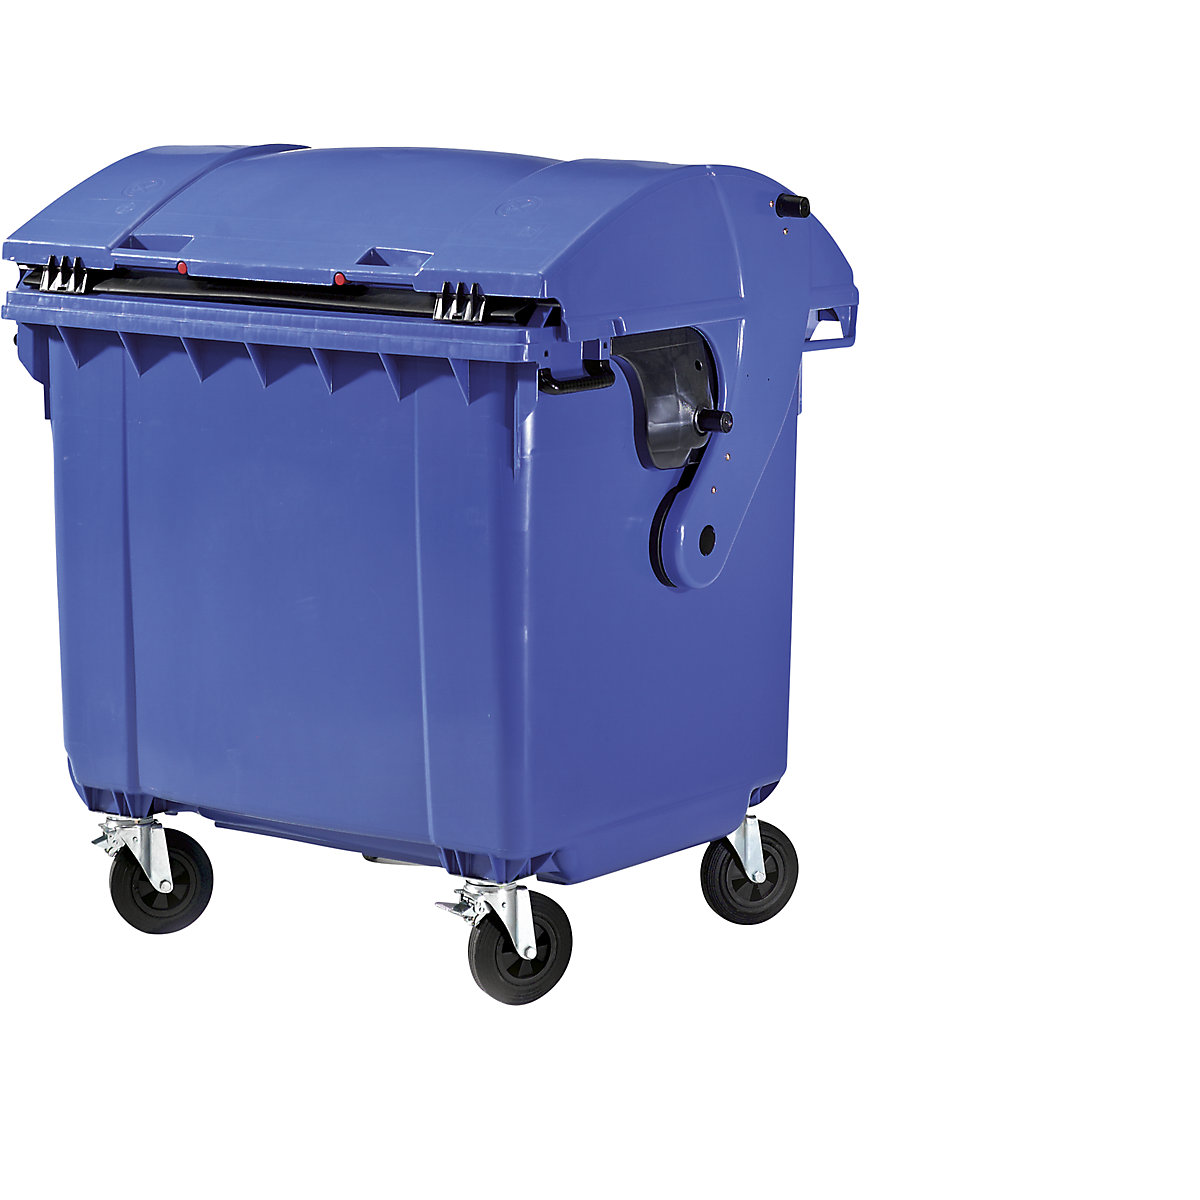 Contentor do lixo em plástico, DIN EN 840, volume 1100 l, LxAxP 1360 x 1465 x 1100 mm, tampa deslizante, proteção para crianças, azul-2